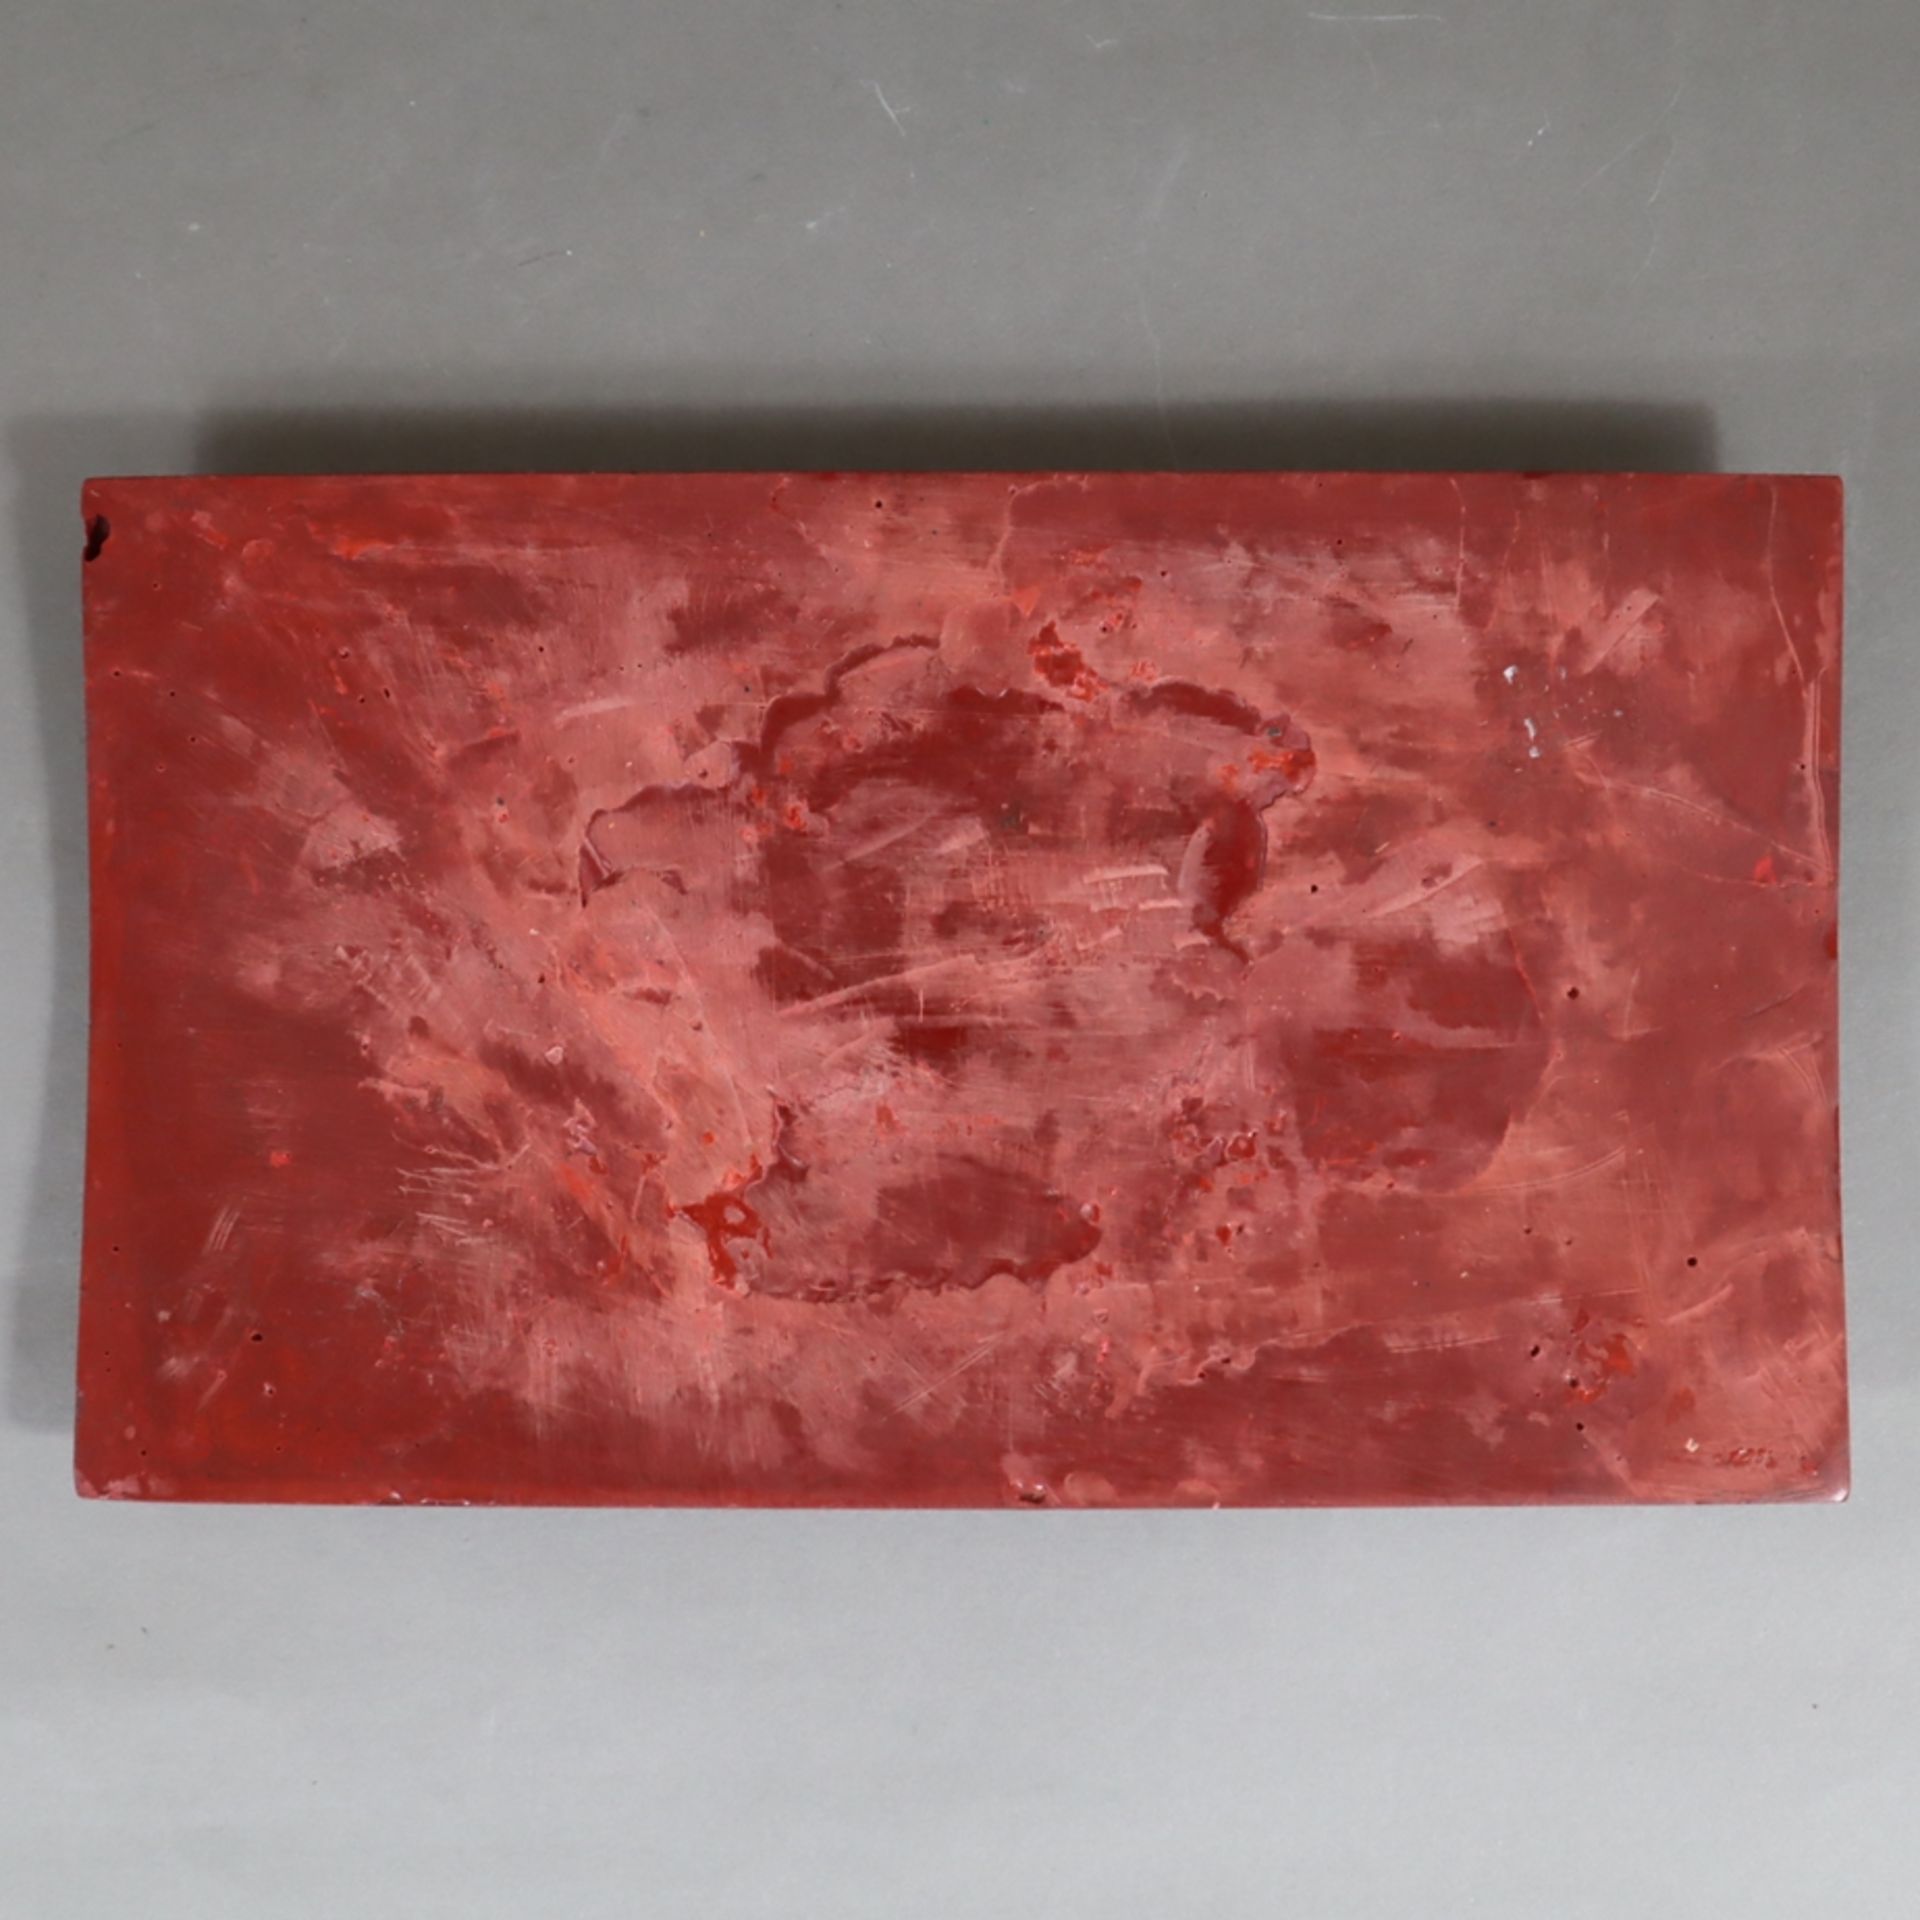 Große Lackplakette - China, roter Lack, rechteckig, in Reliefarbeit gewundener fünfklauiger Drache - Image 6 of 6